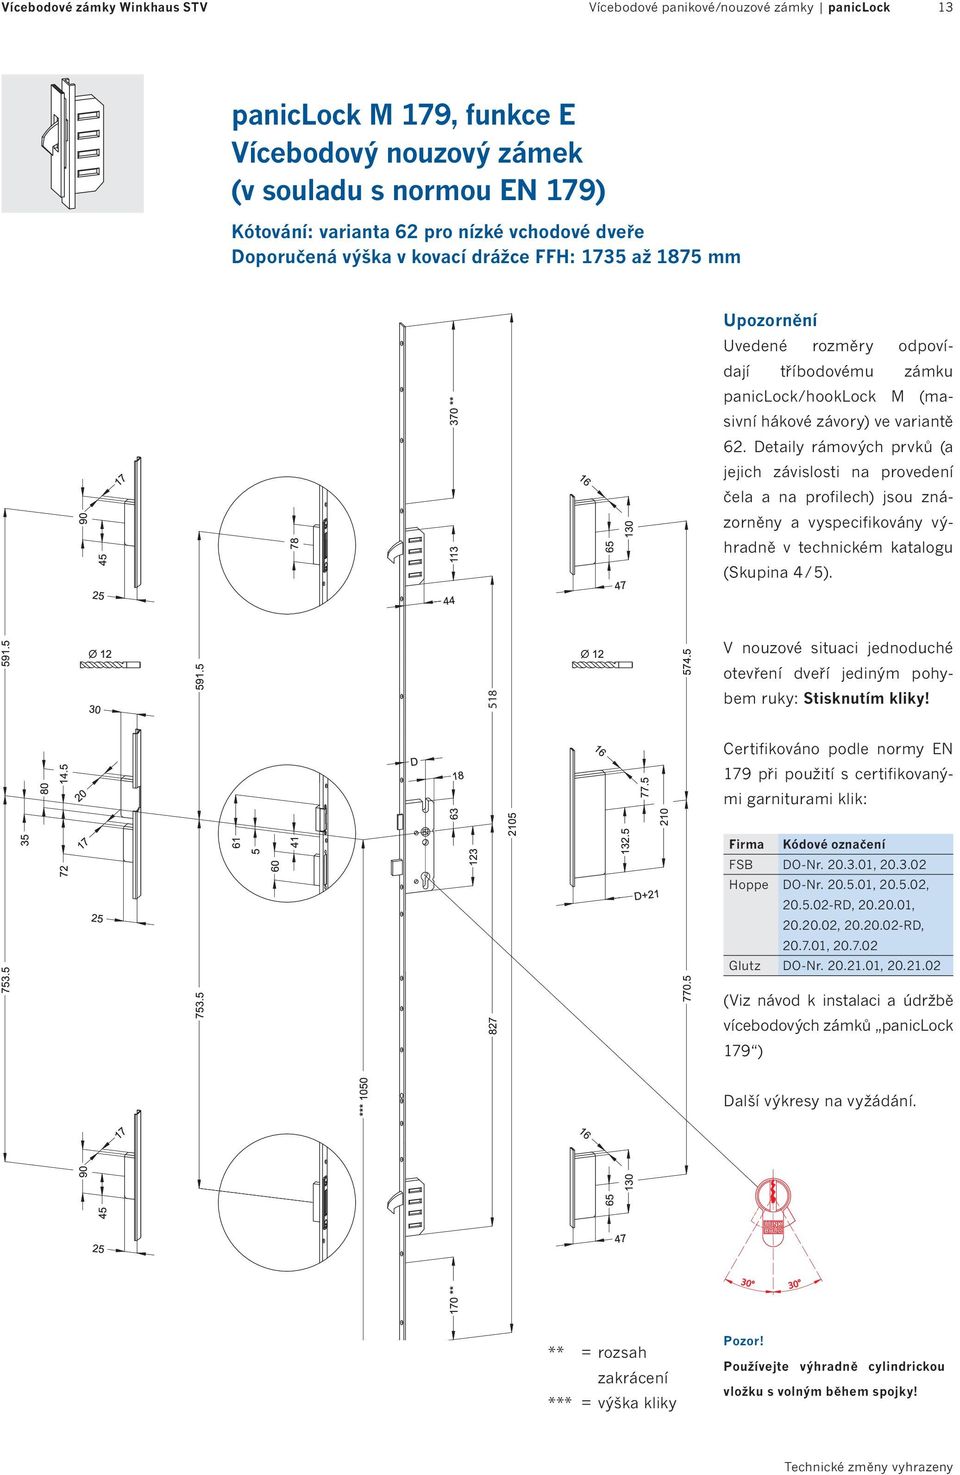 Detaily rámových prvků (a jejich závislosti na provedení čela a na profilech) jsou znázorněny a vyspecifikovány výhradně v technickém katalogu (Skupina 4 / 5).